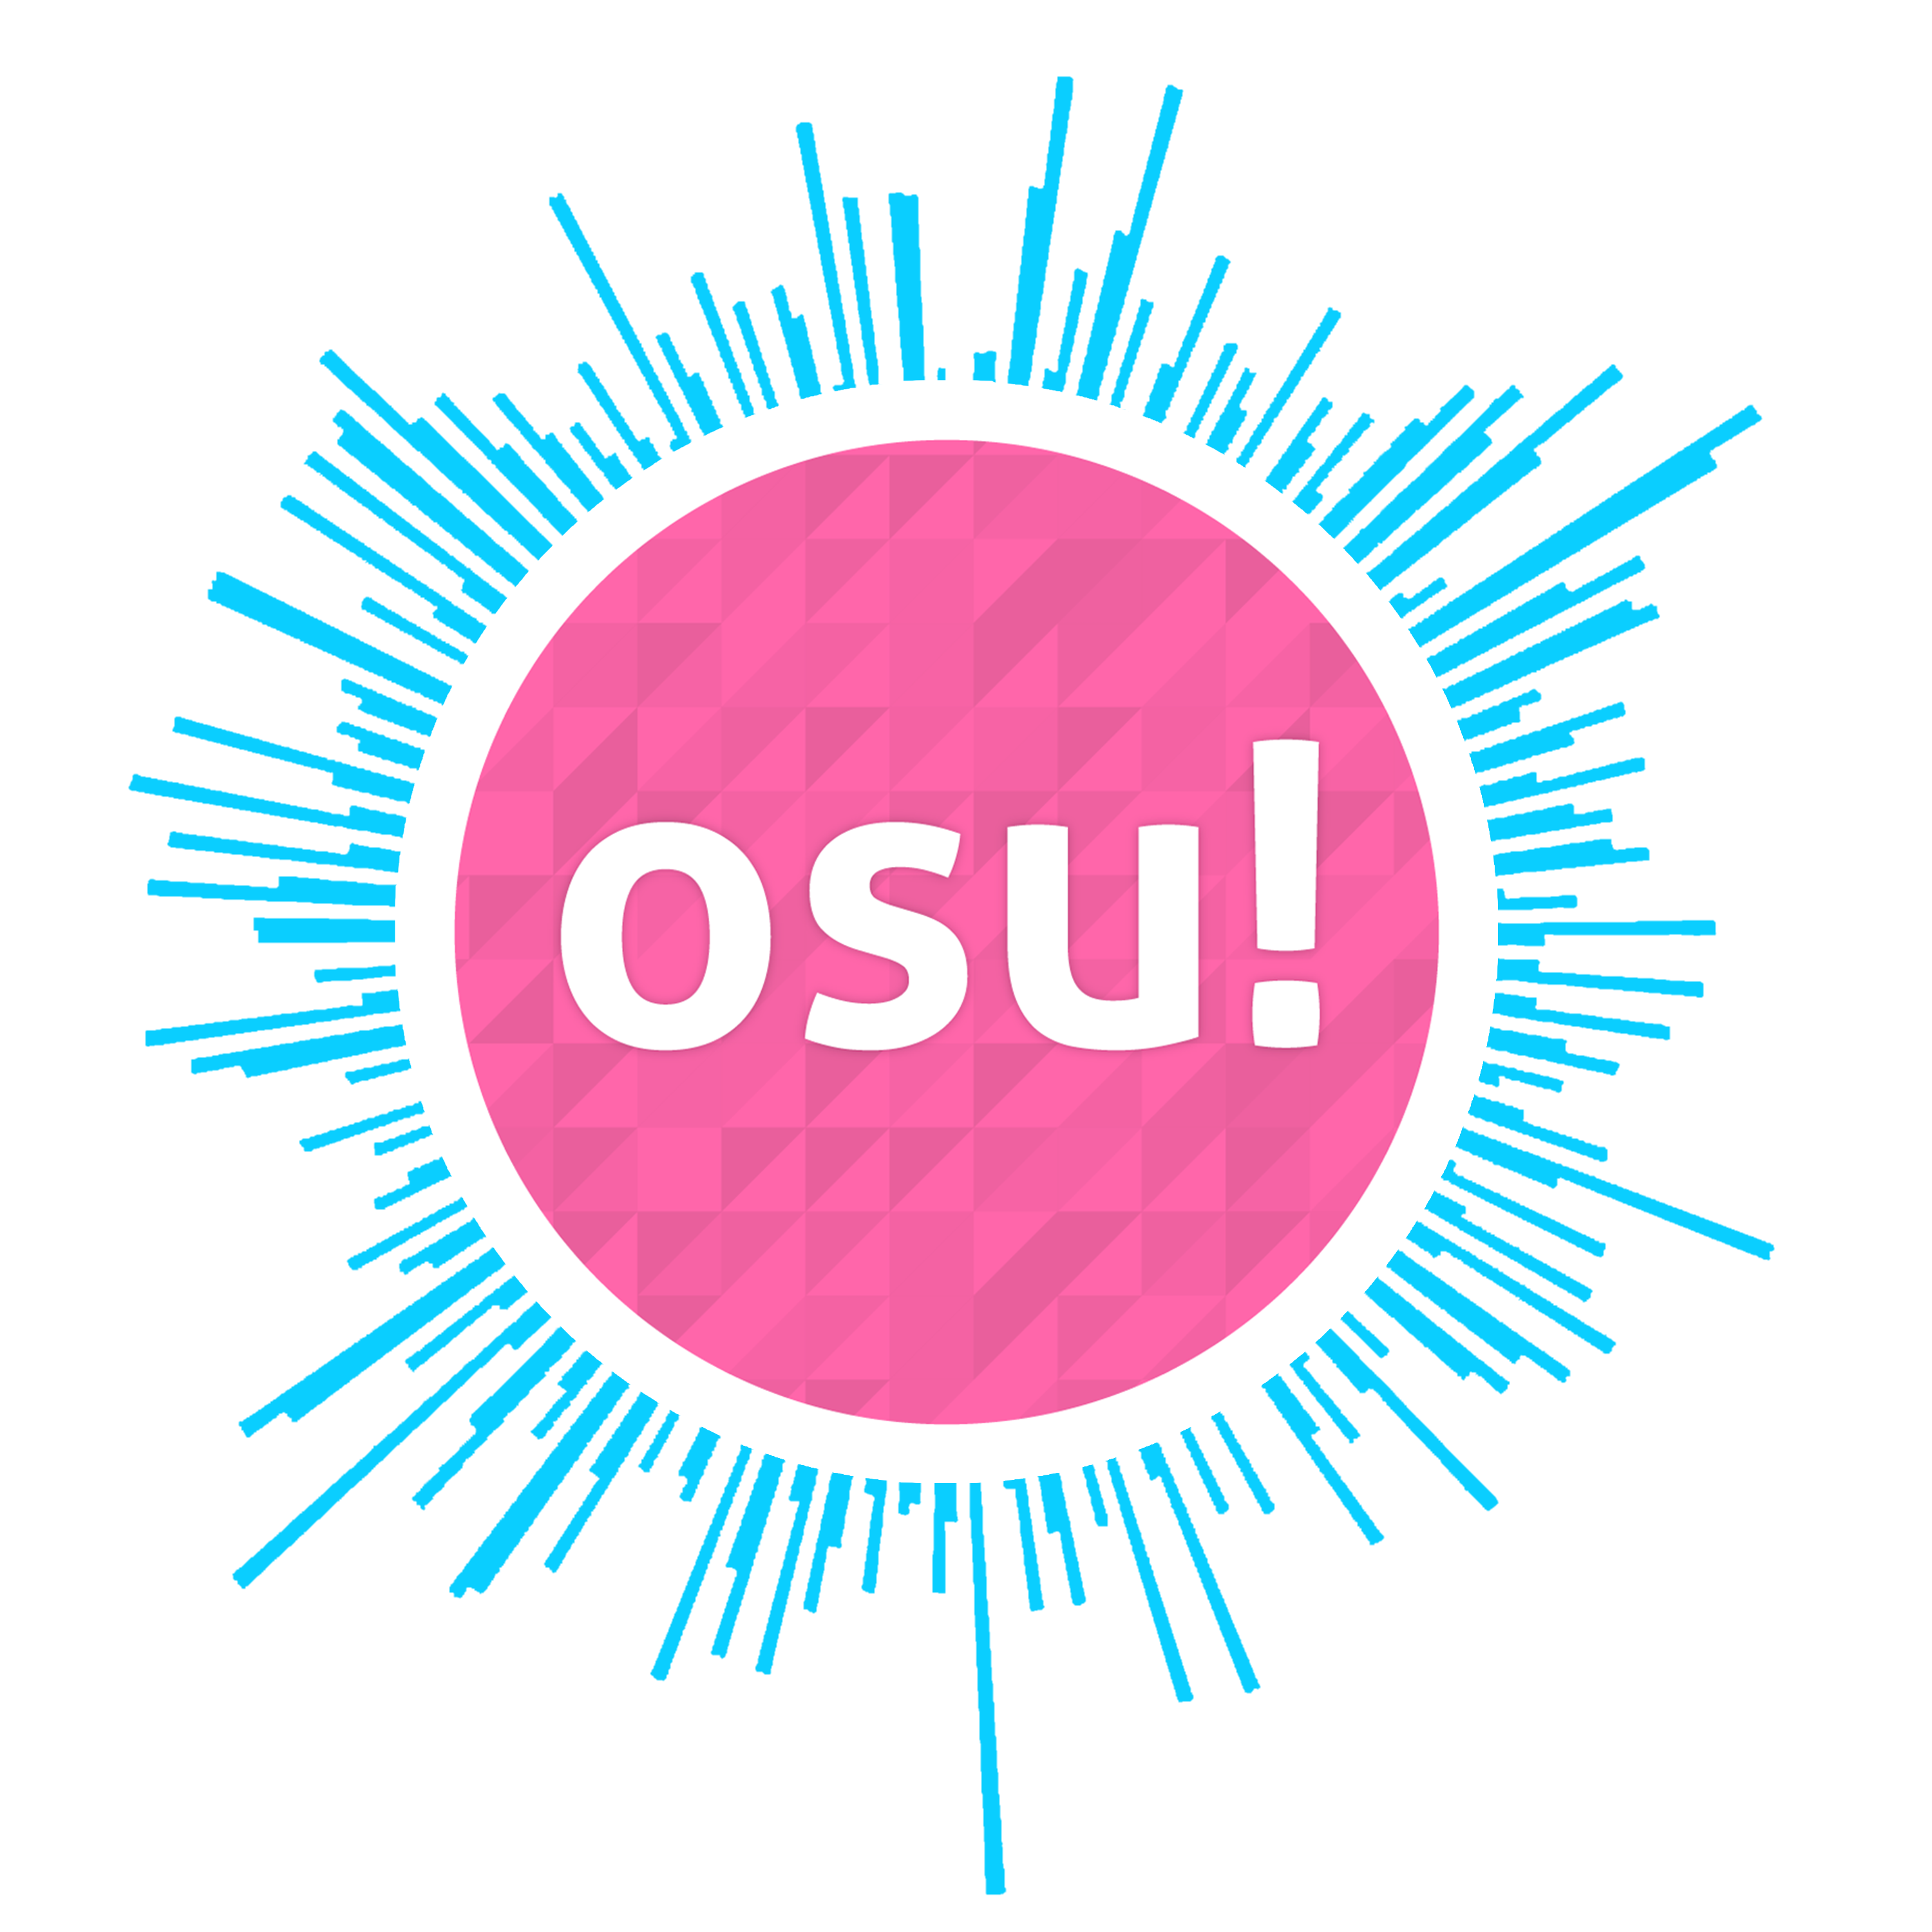 osu-logo-by-shadowthegod-on-deviantart